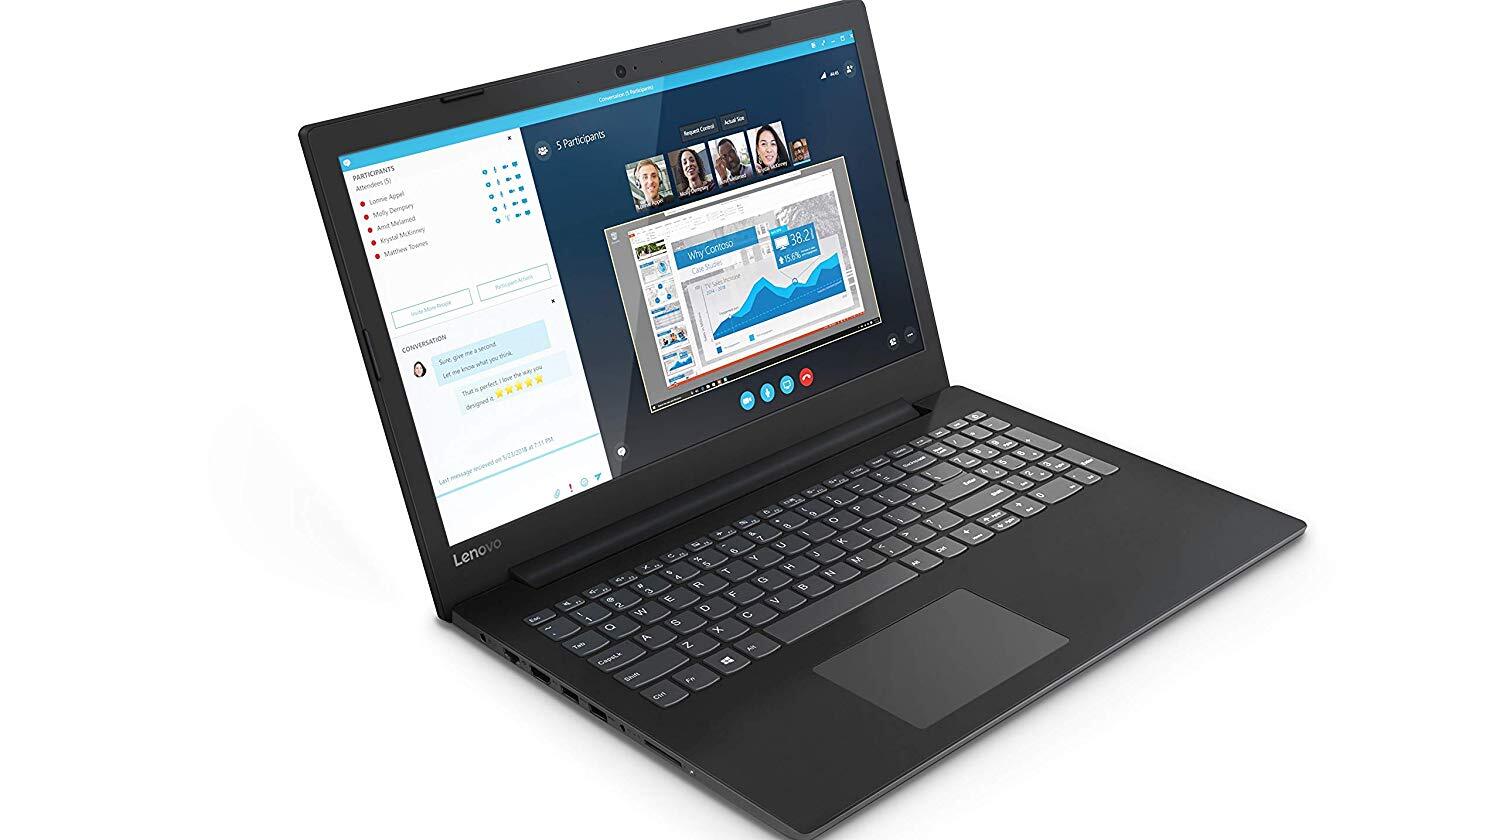 Lenovo V145-AMD-A6 15.6 inch HD Laptop (4GB RAM/ 1TB HDD/ Windows 10 Home/ Black/ 2.1 kg), 81MTA000IH-M000000000253 www.mysocially.com